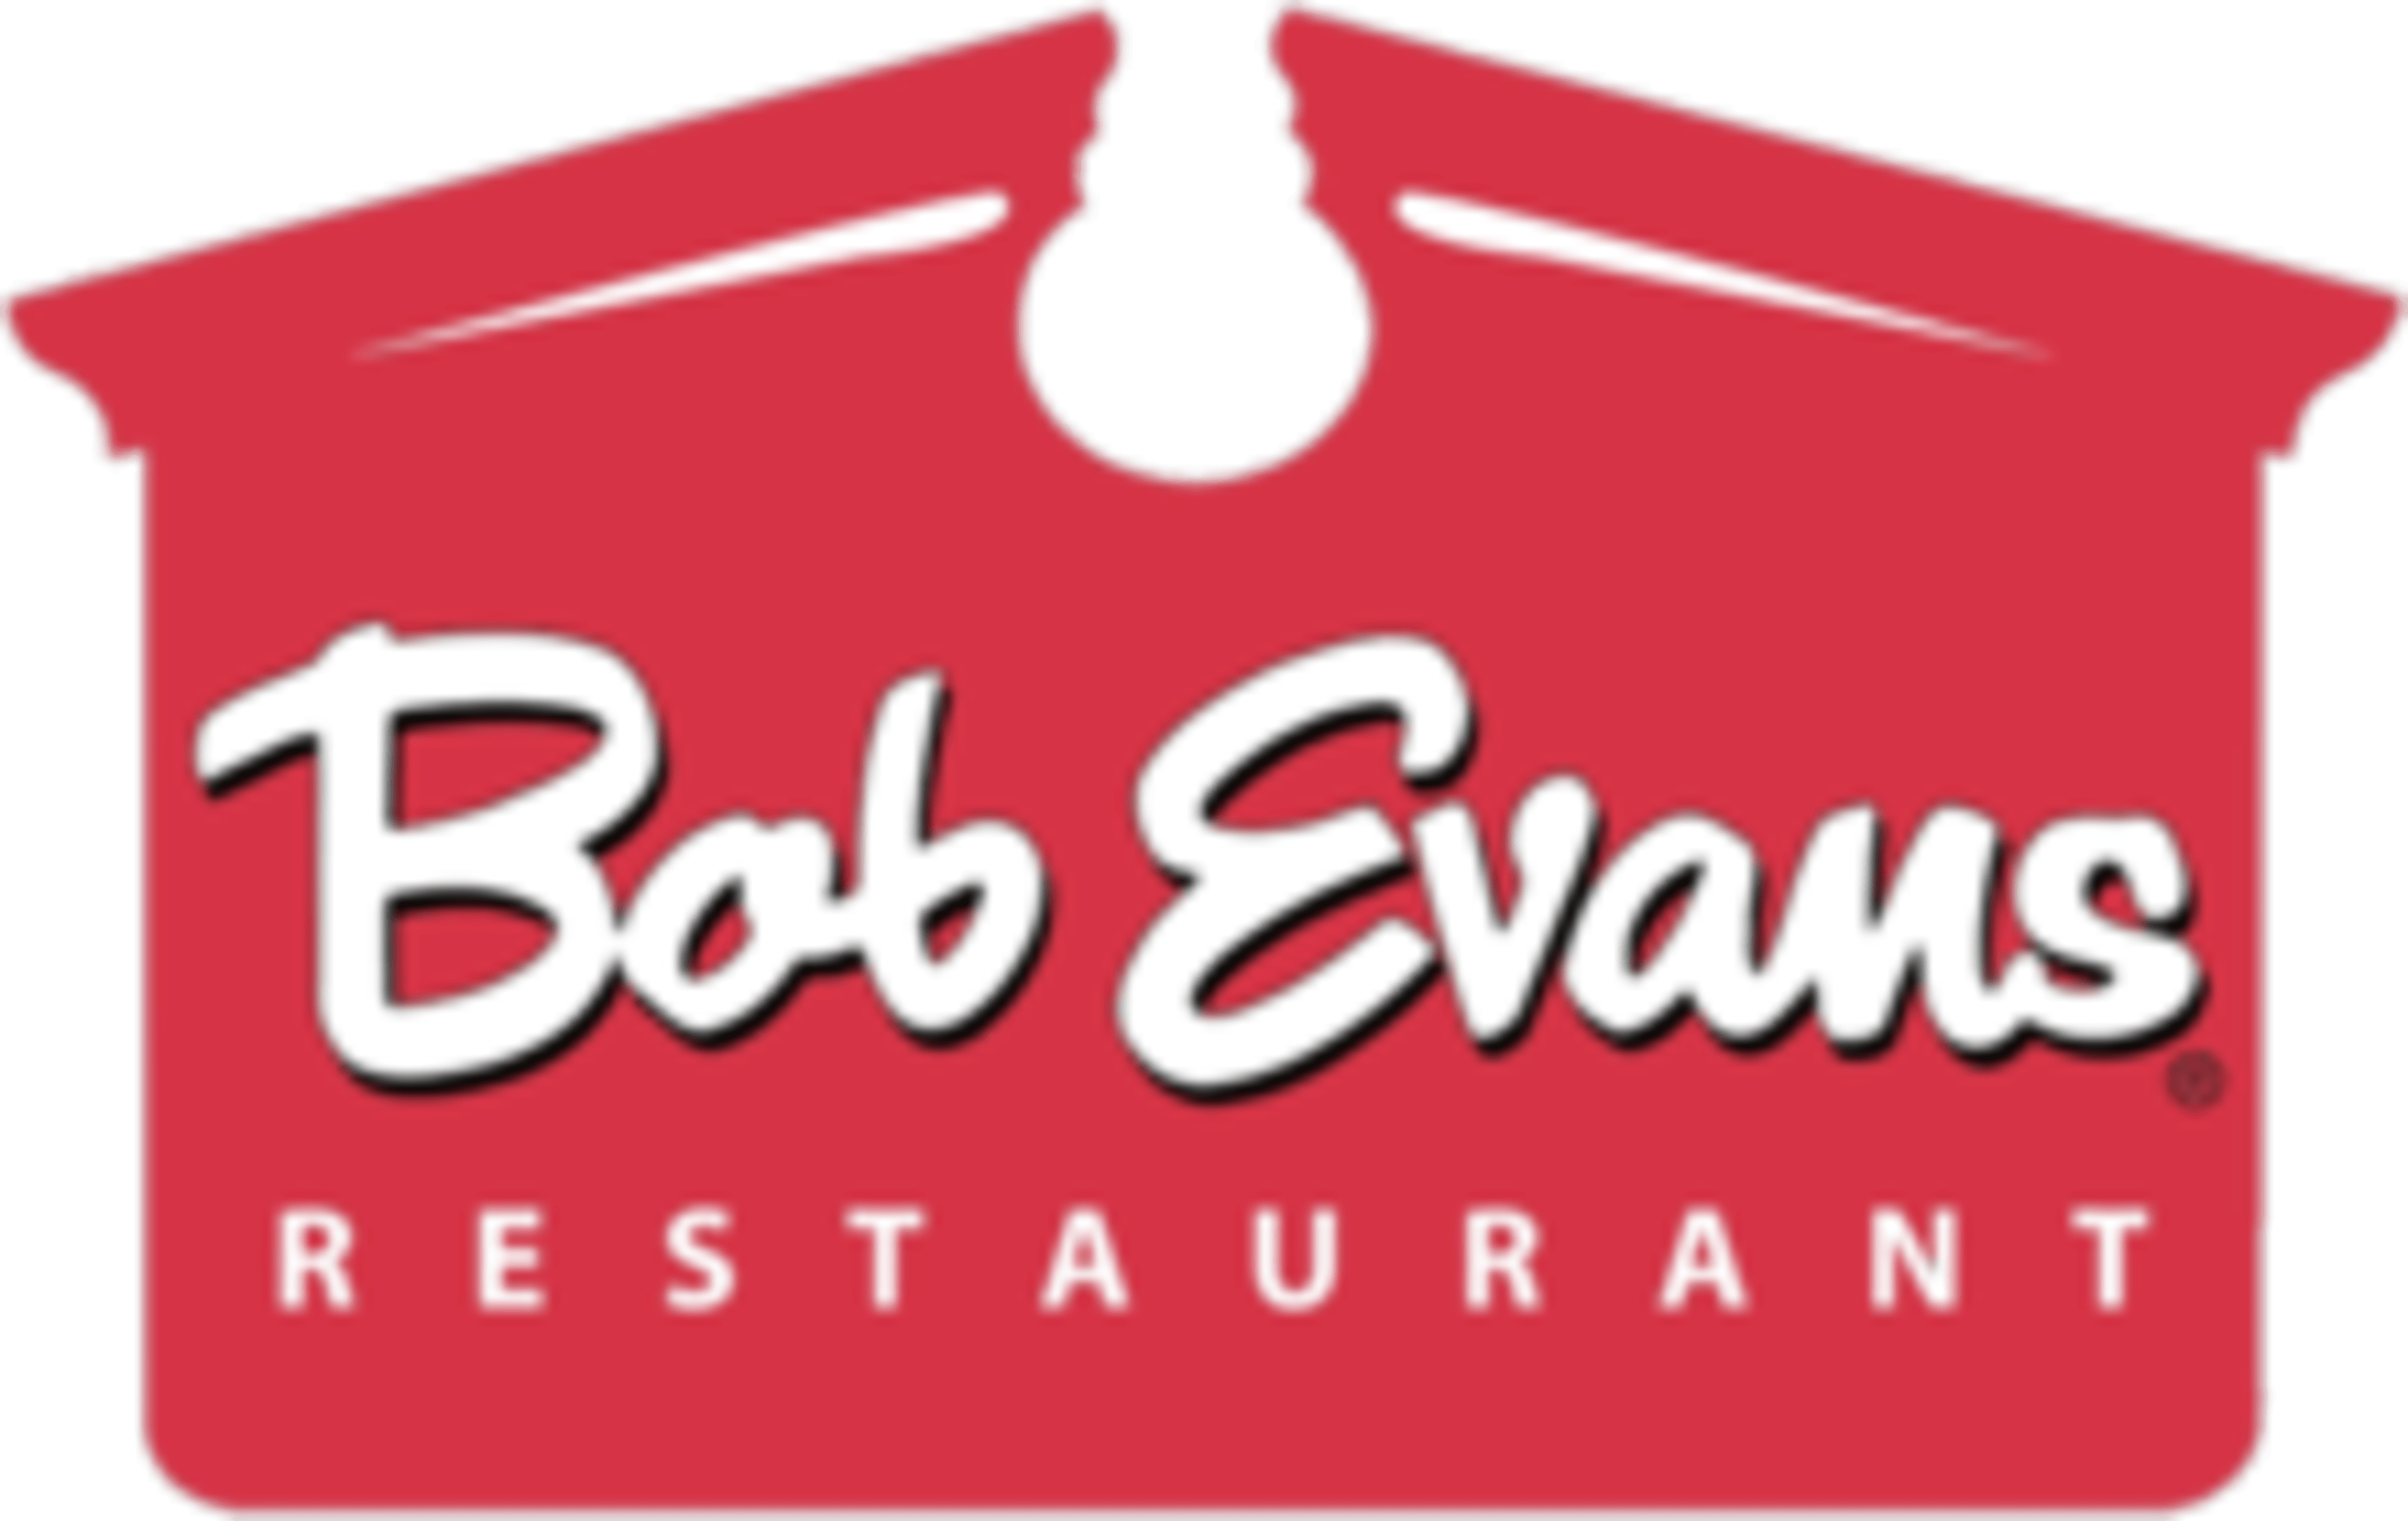 Bob EvansCode